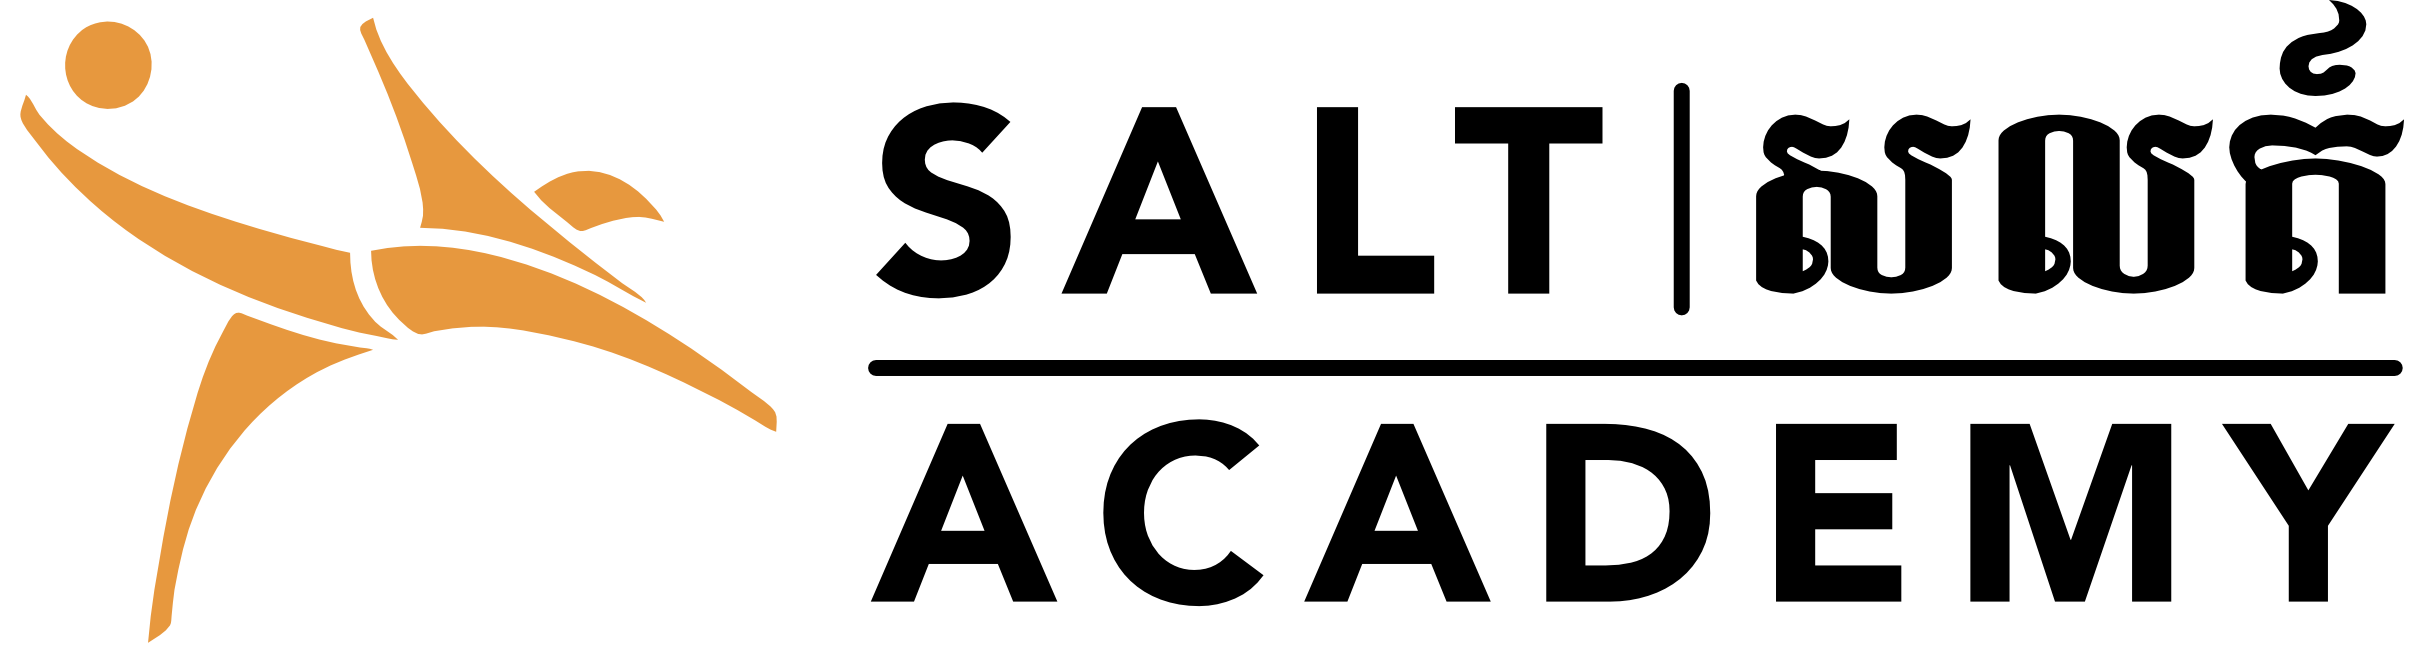 SALT Logo